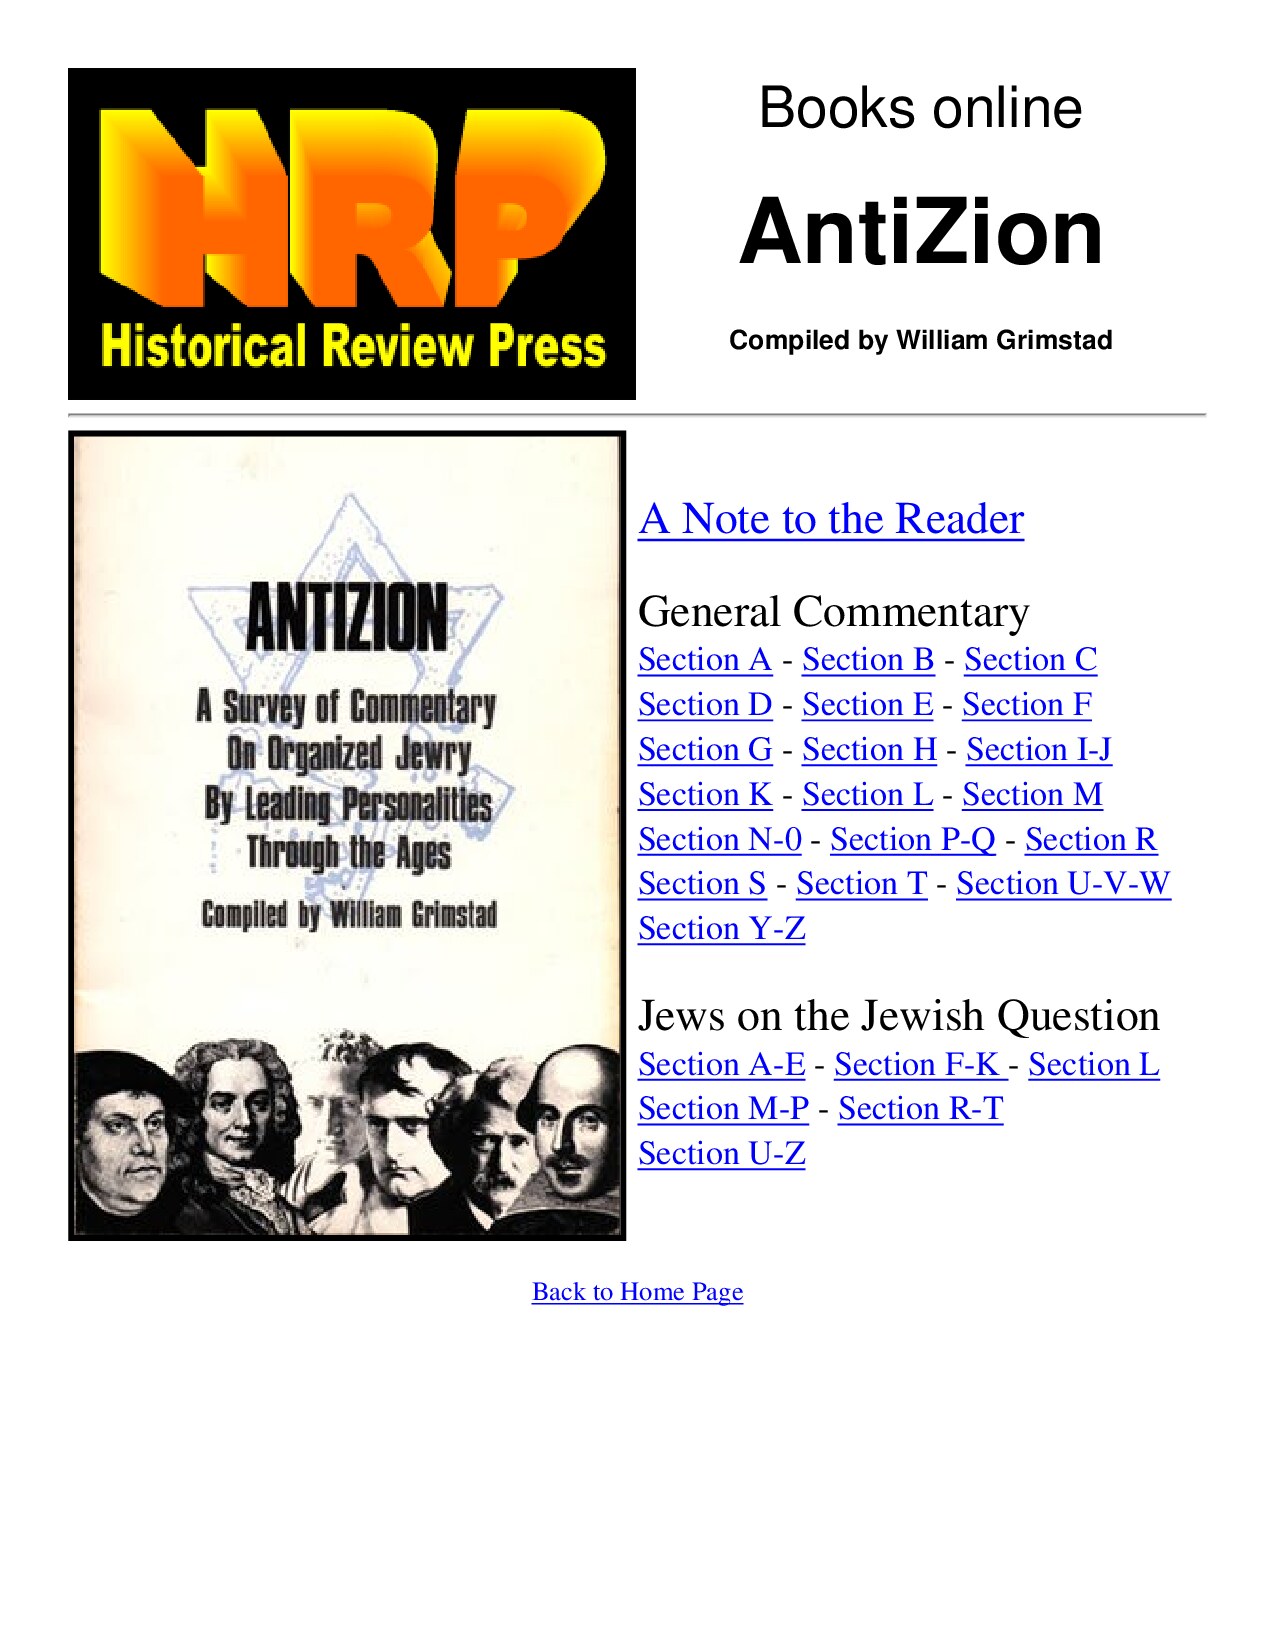 HRP: Anti-Zion by William Grimstad